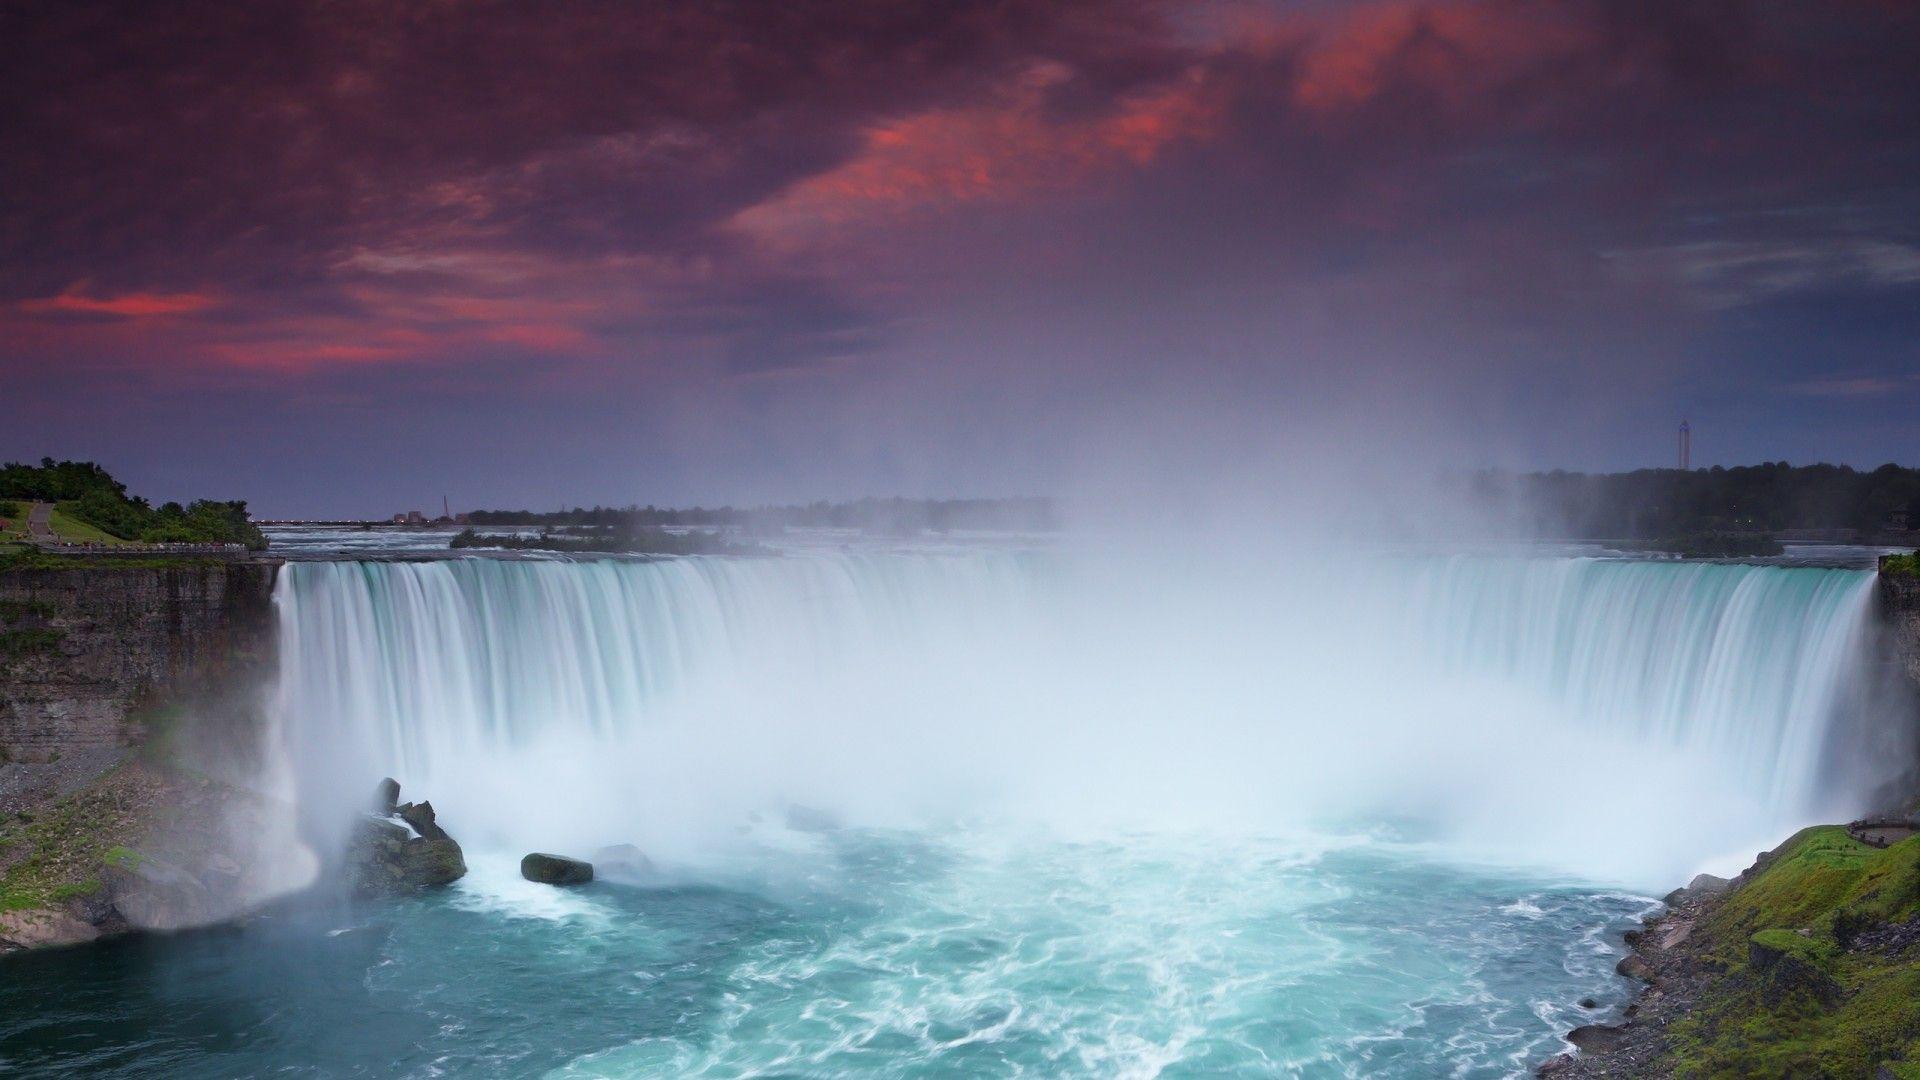 Niagara Falls Image Wallpaper 2560x1600, Wallpaper13.com